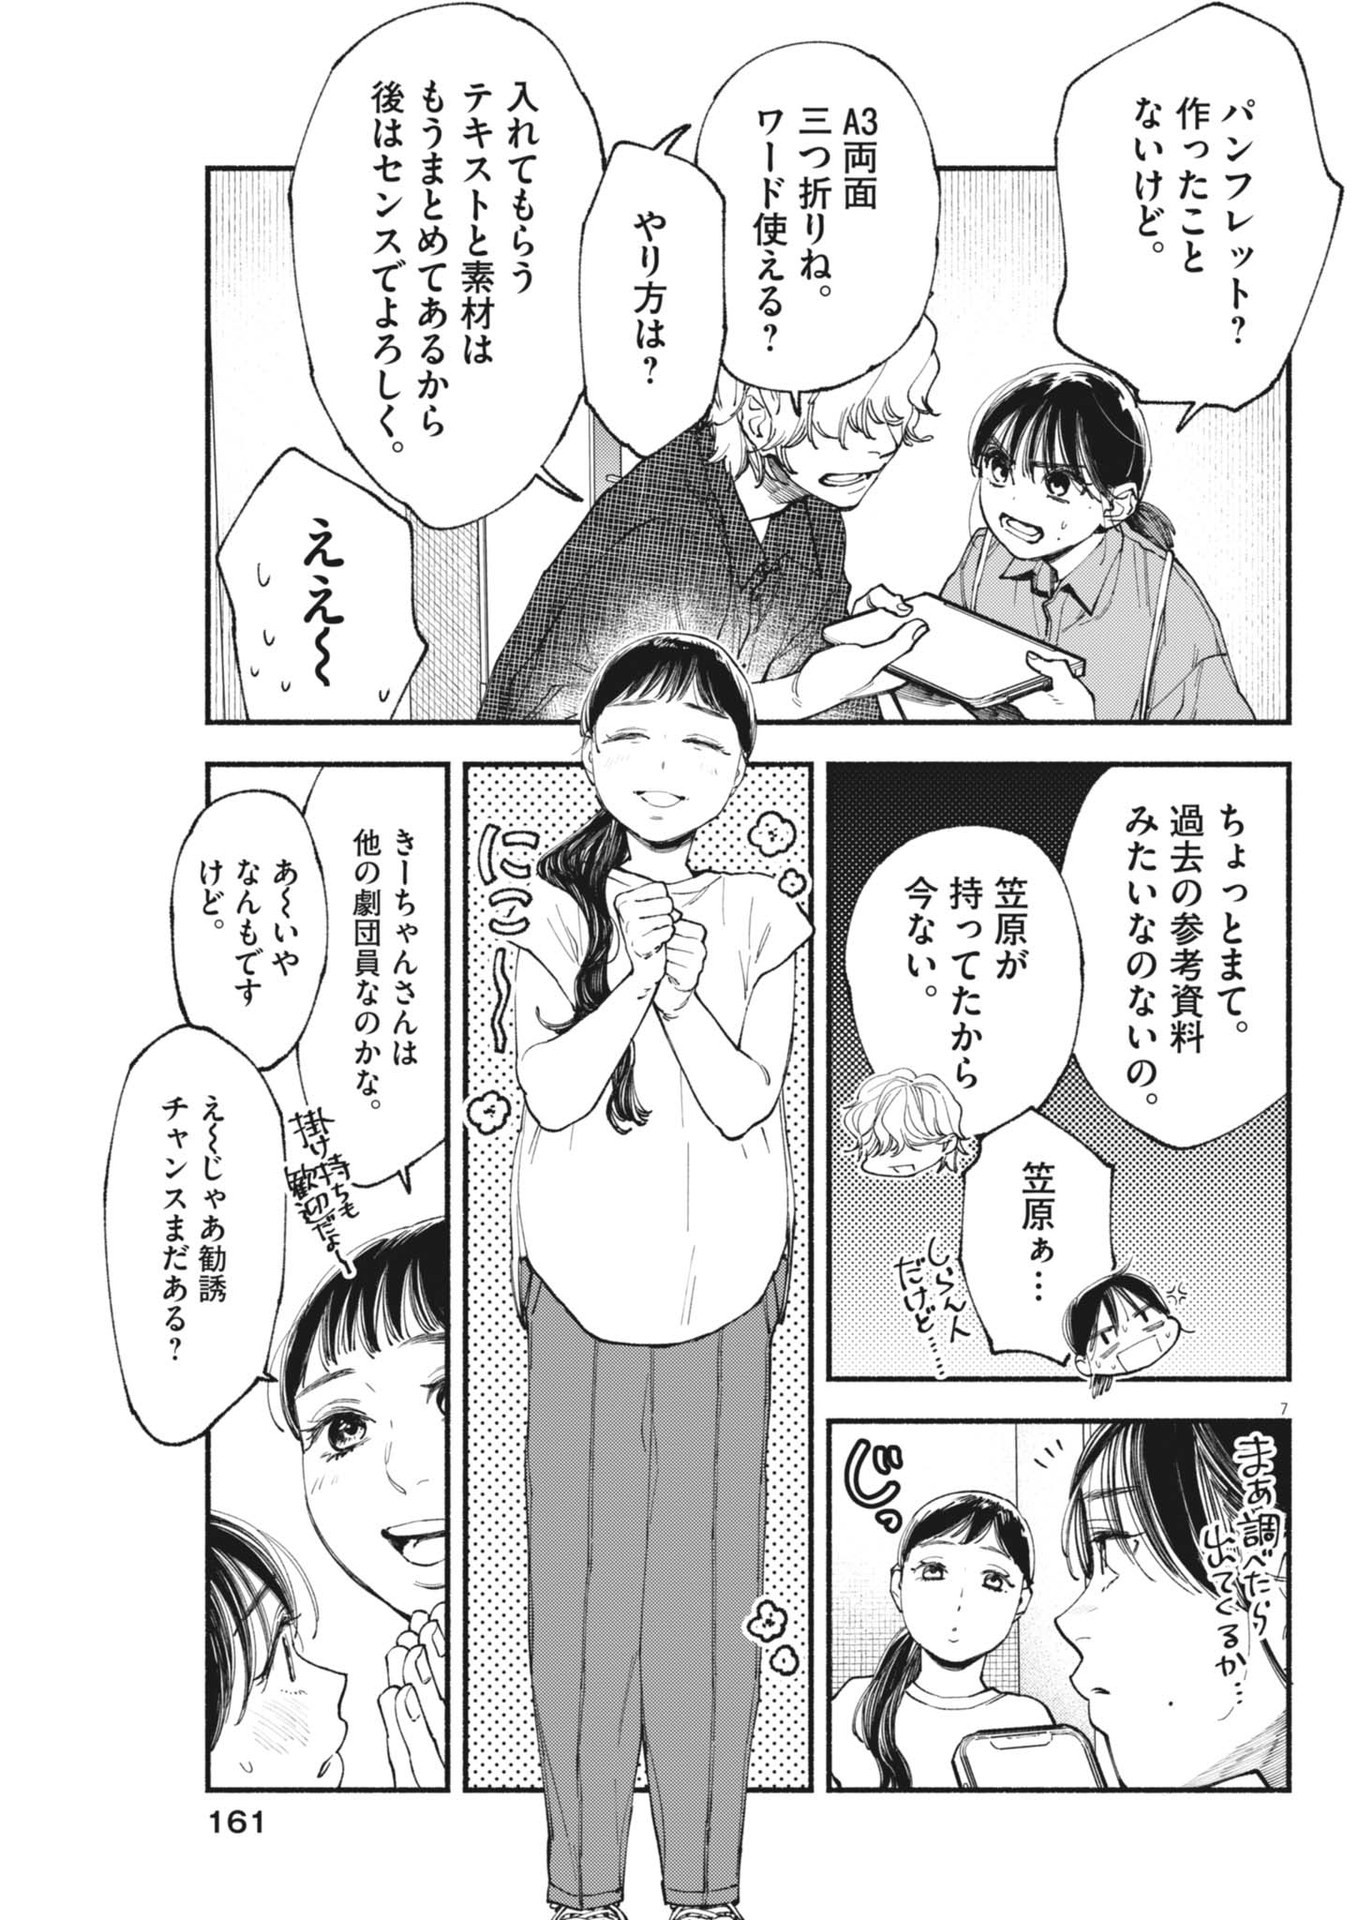 Konoyo wa Tatakau Kachi ga Aru  - Chapter 28 - Page 7